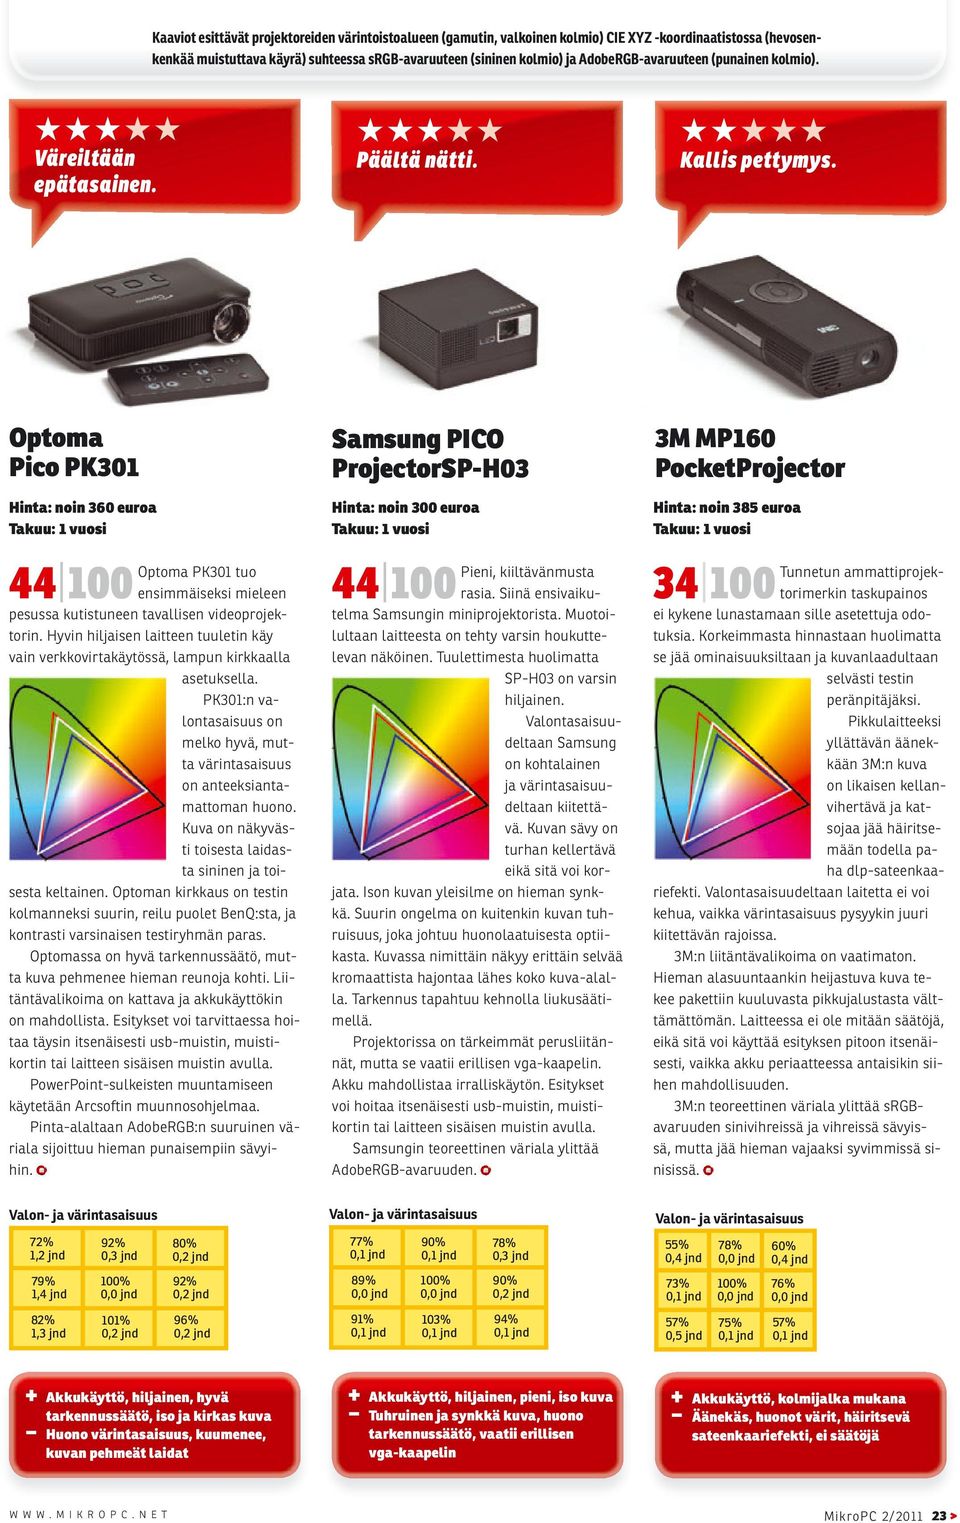 Optoma Pico PK301 Hinta: noin 360 euroa Optoma PK301 tuo 44 100 ensimmäiseksi mieleen pesussa kutistuneen tavallisen videoprojektorin.